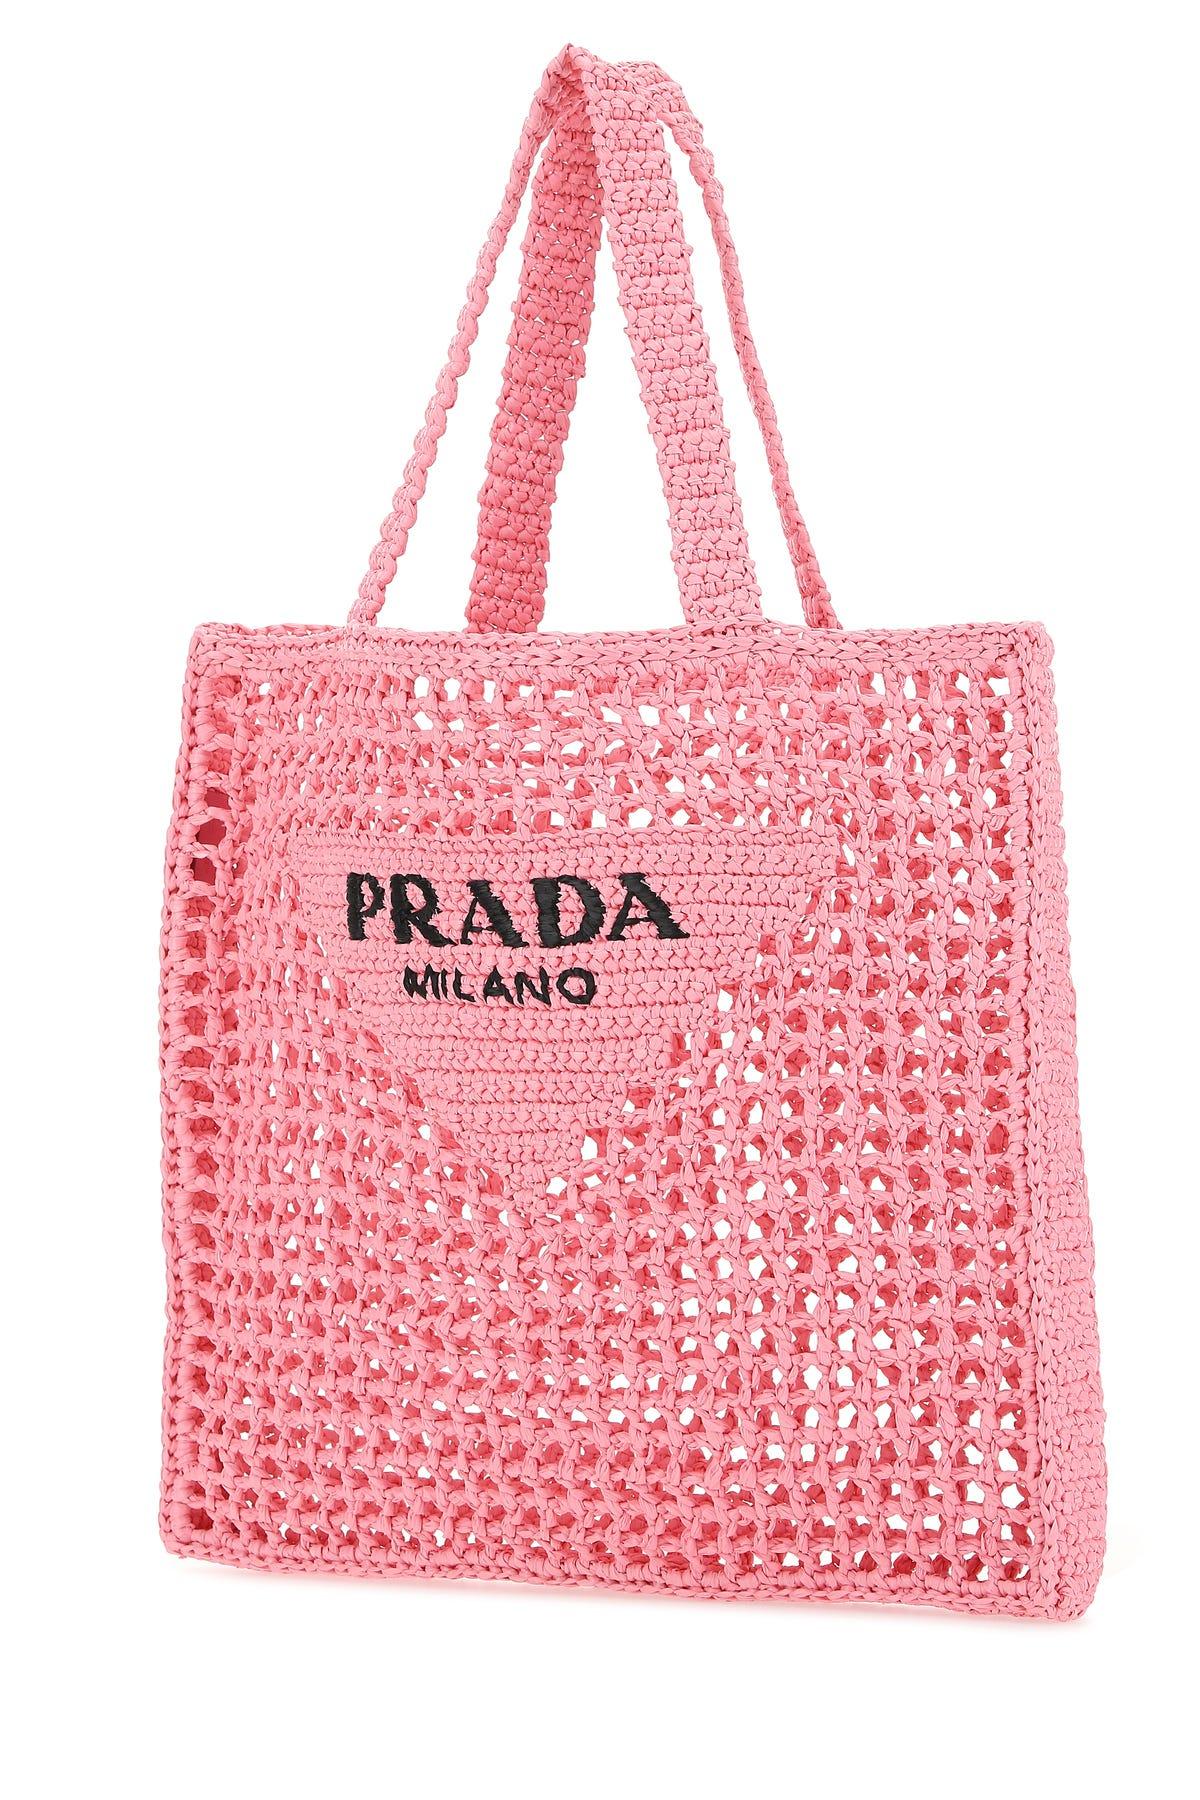 Prada Woman Borsa In Pink